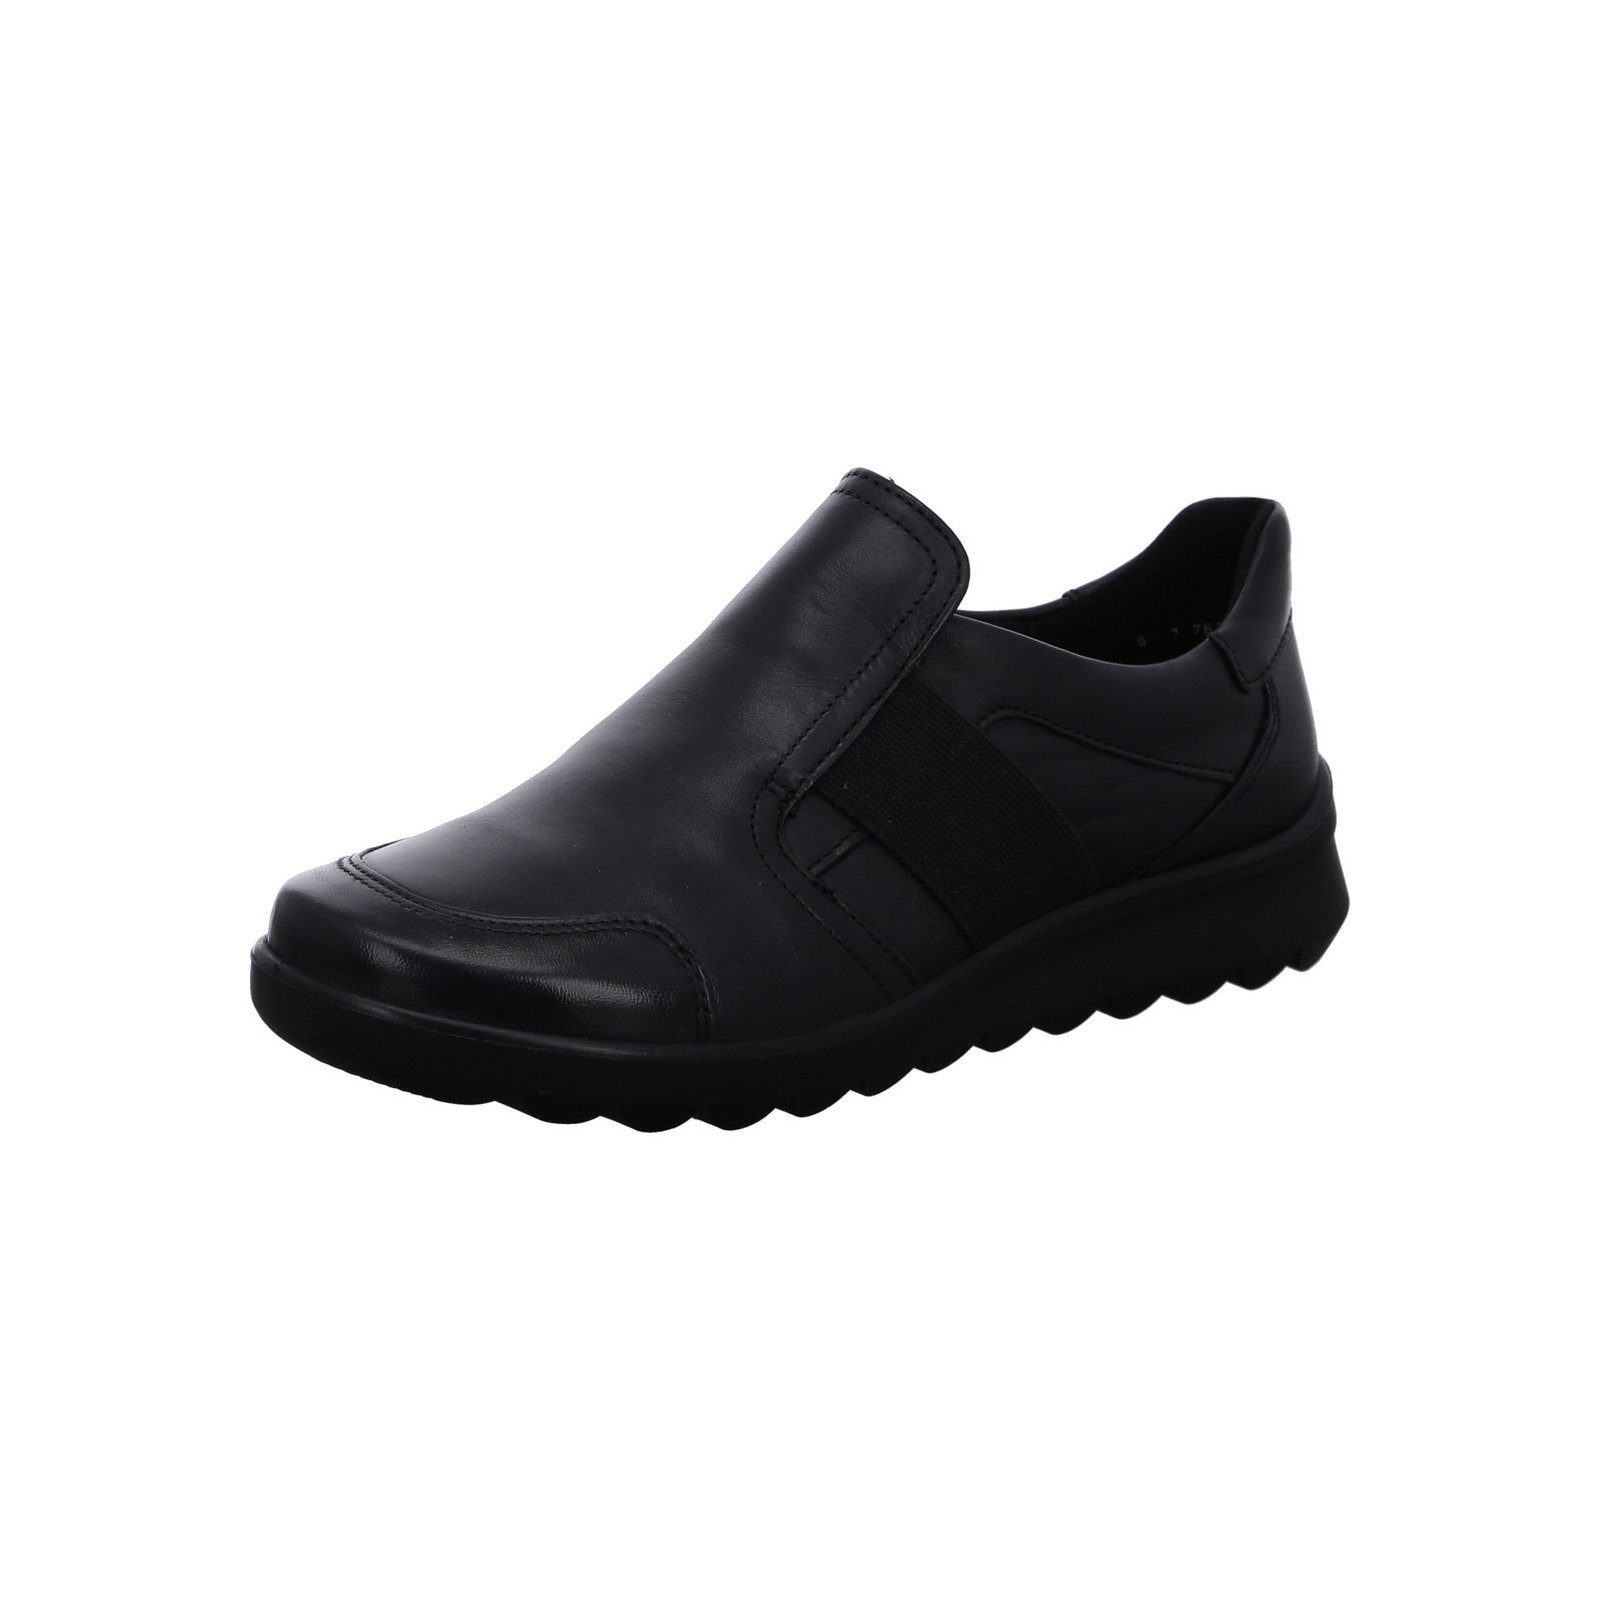 Ara Toronto - Damen Schuhe Slipper Glattleder schwarz